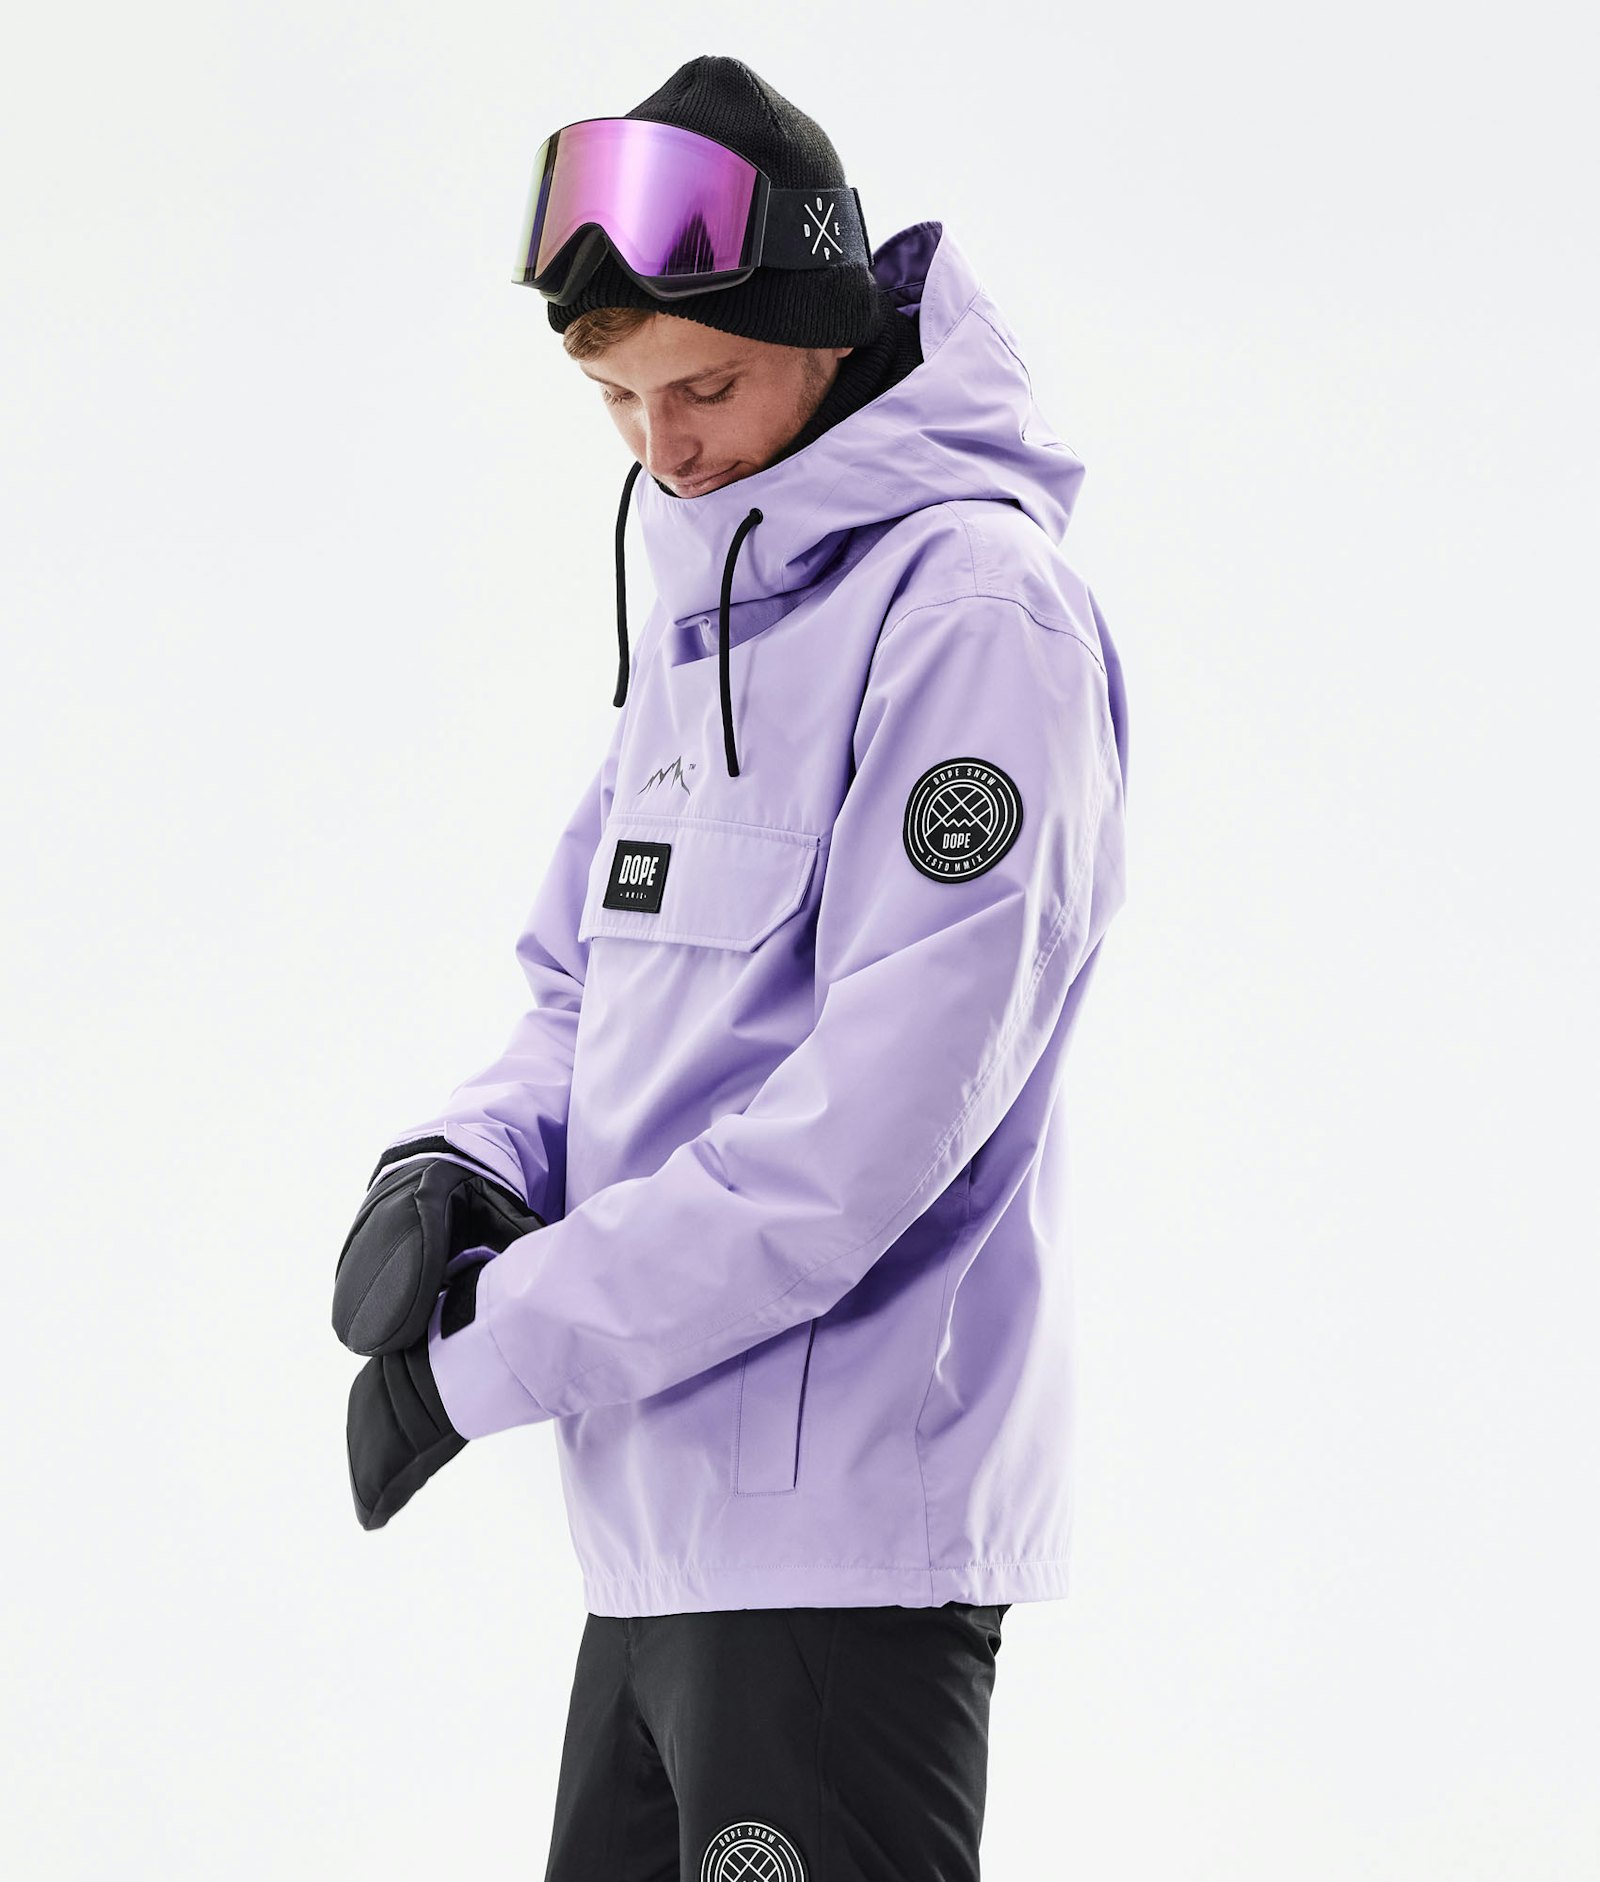 Blizzard 2021 Veste Snowboard Homme Faded Violet